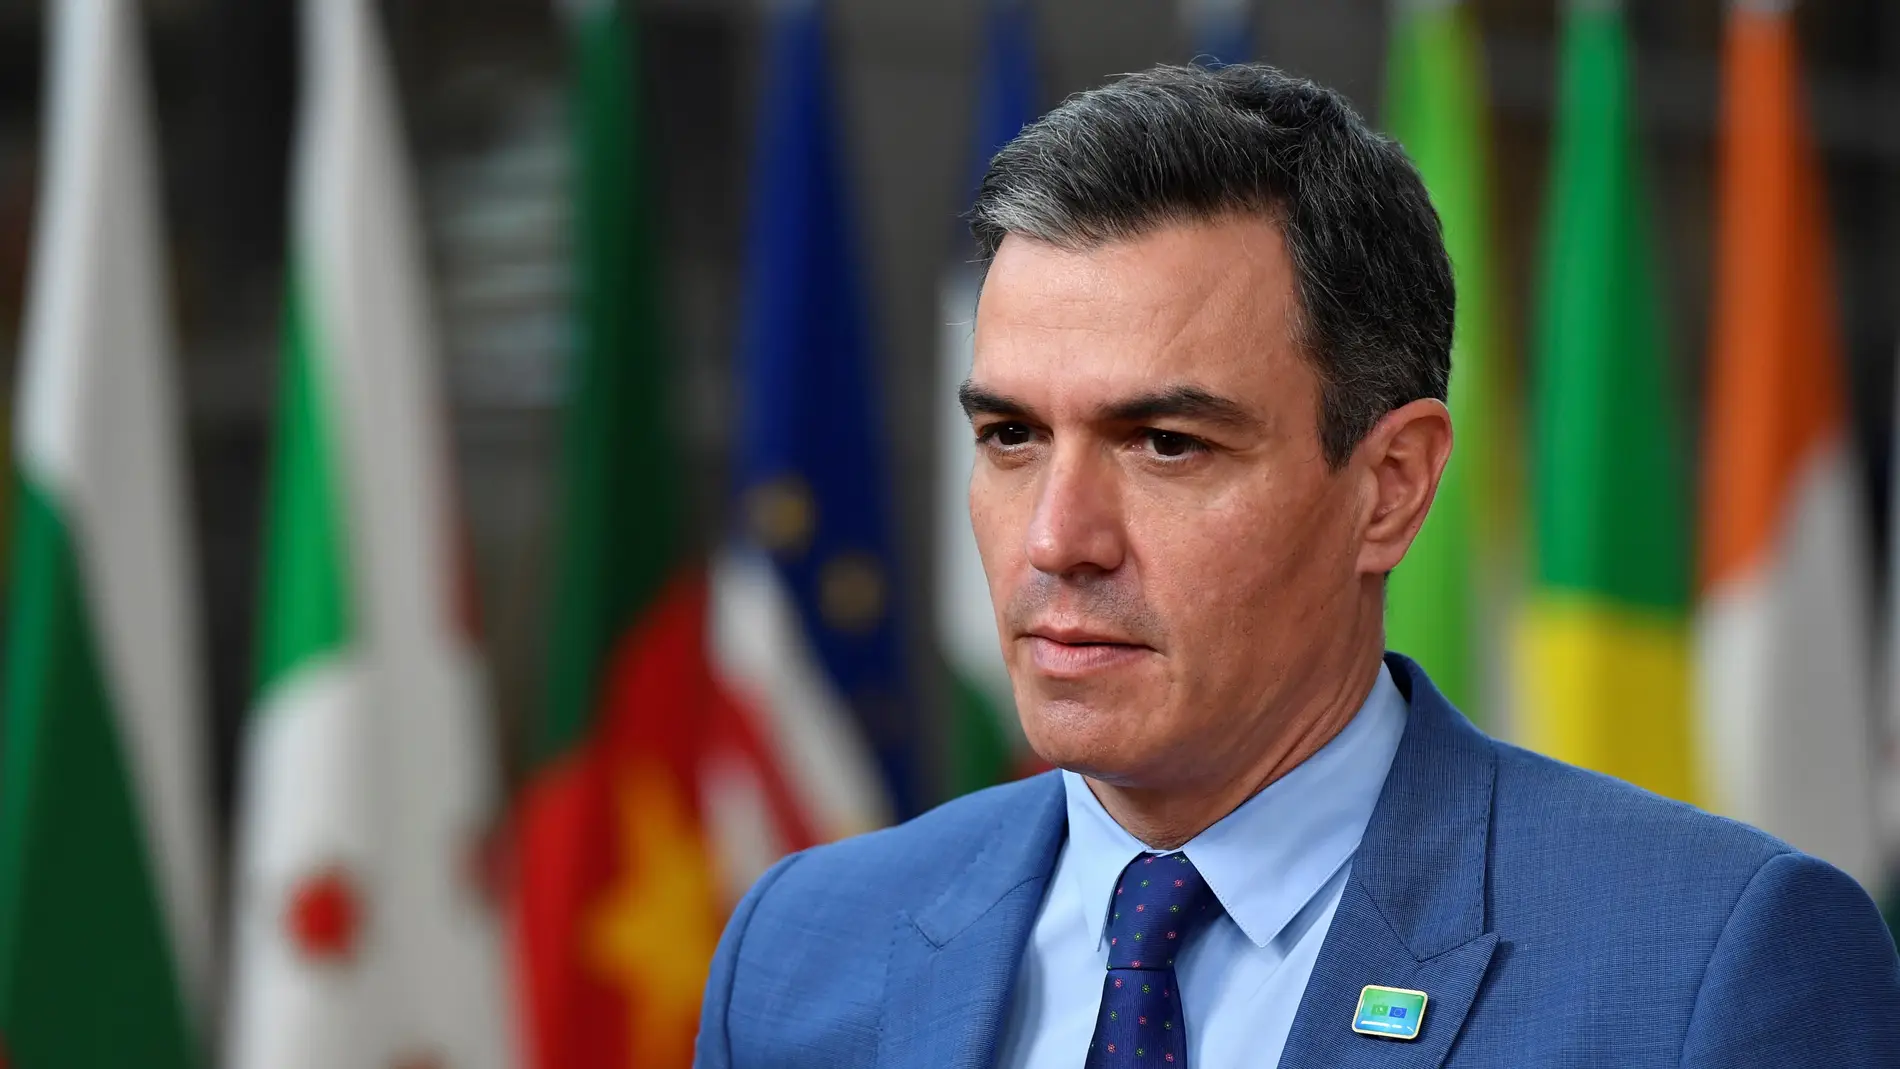 Pedro Sánchez pide al PP que resuelva las dudas sobre corrupción pero no "implique" a Moncloa